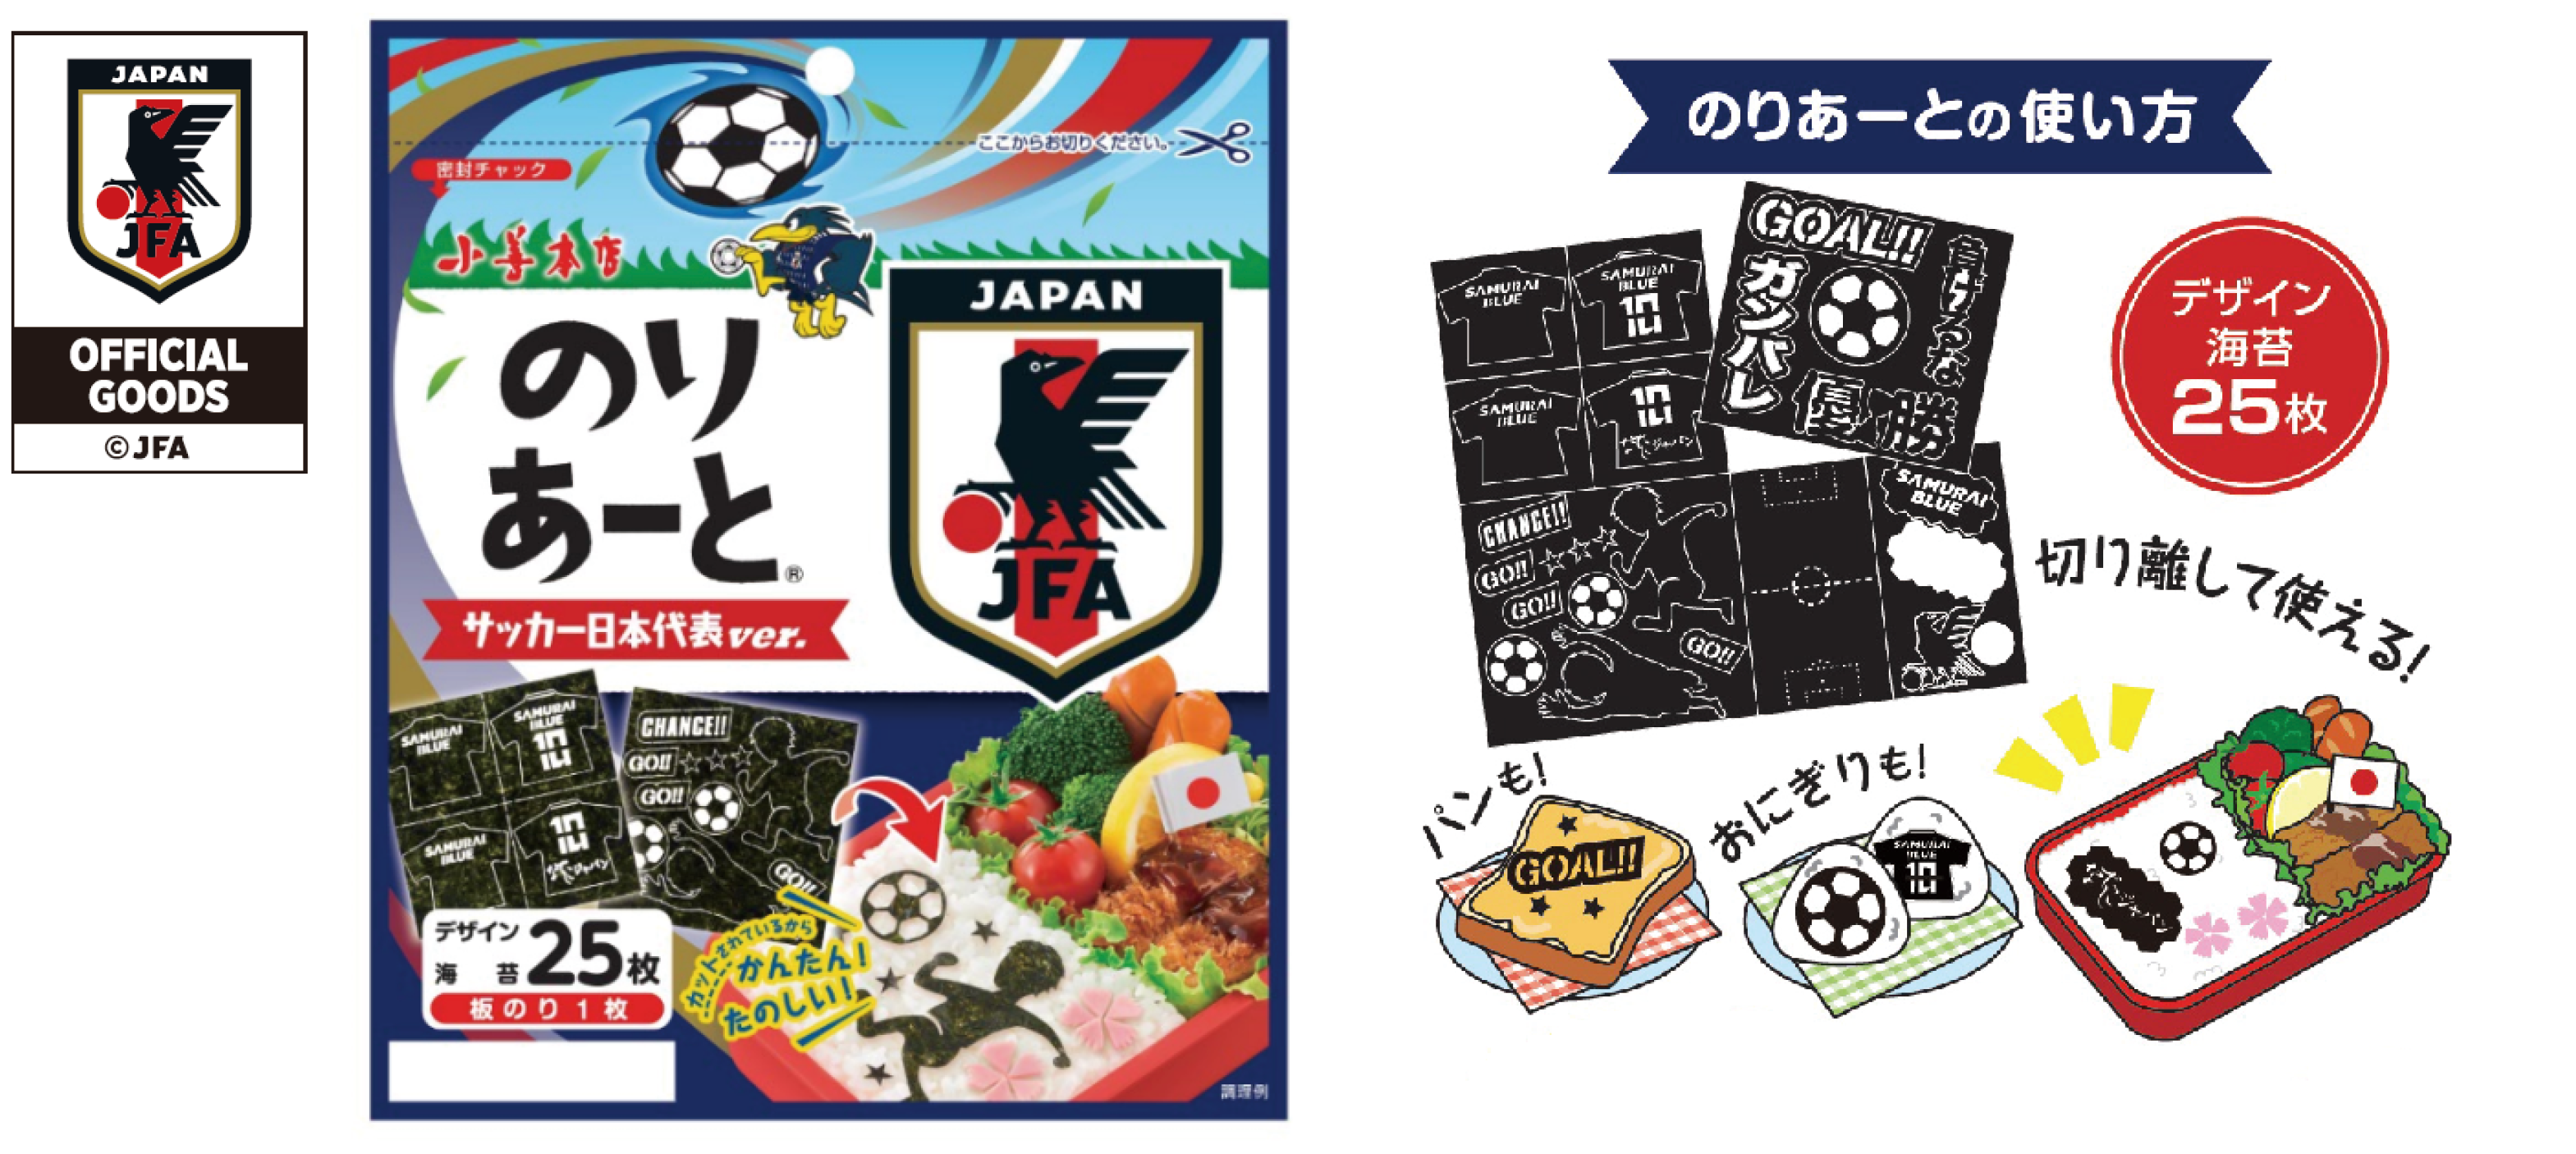 新商品「のりあーとサッカー日本代表ver.」プレスリリース